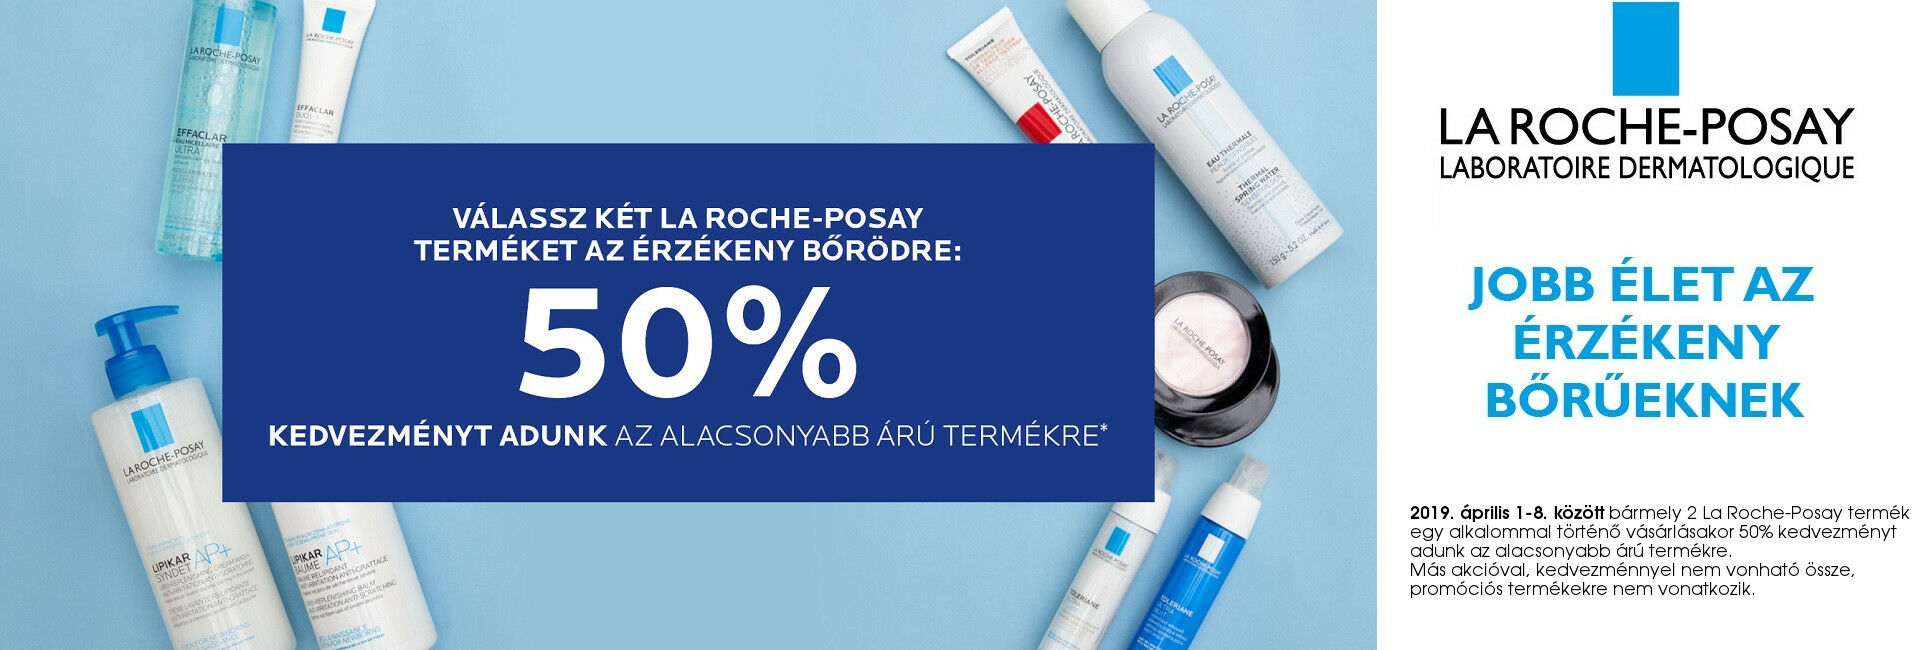 2019. április 1-3. között a 2. La Roche-Posay termékre 50% kedvezményt adunk!